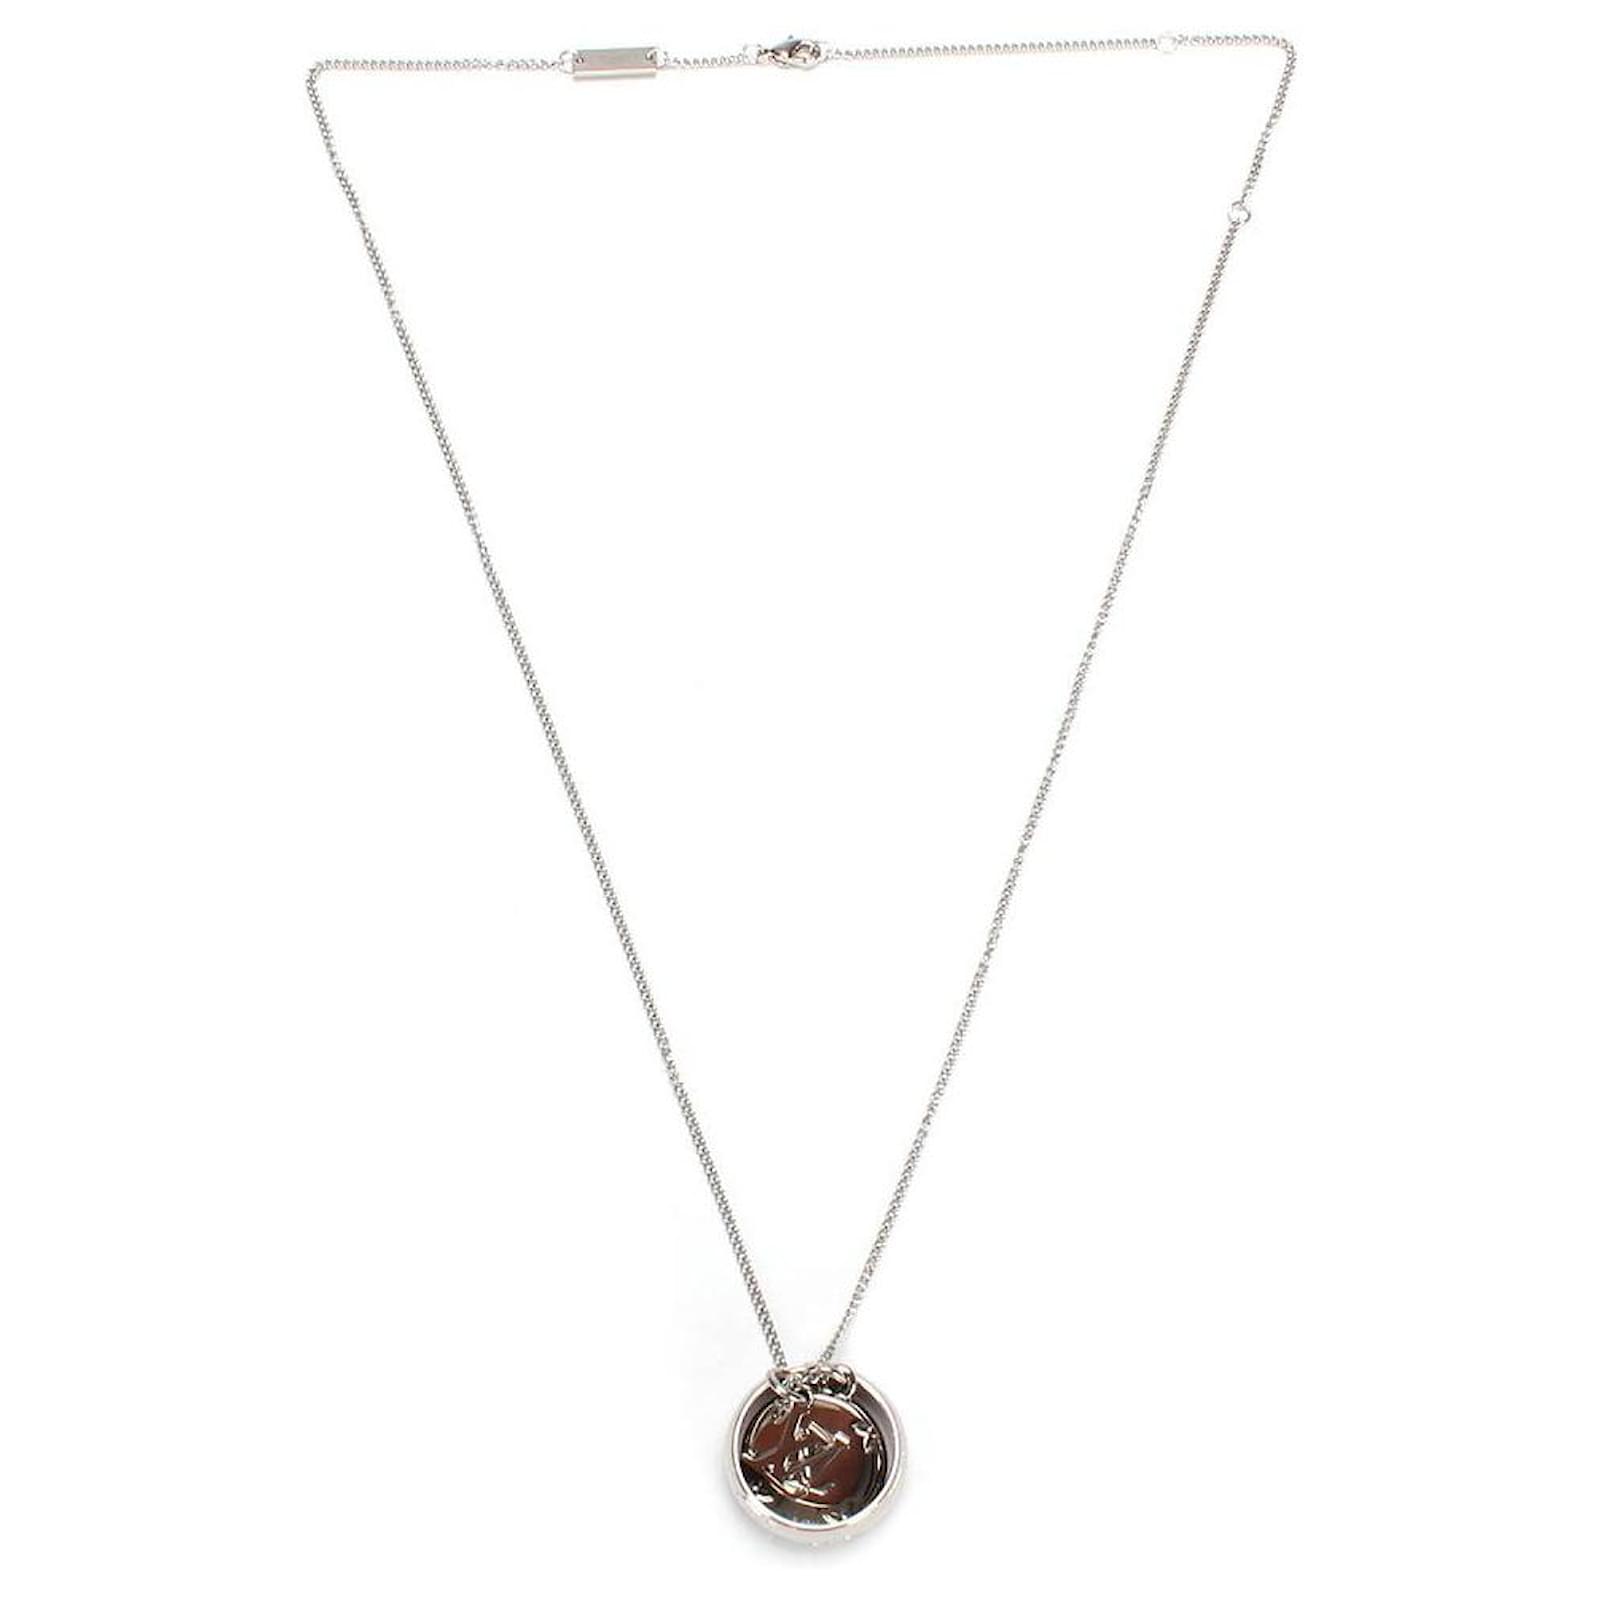 Louis Vuitton Gold Monogram Charm Necklace